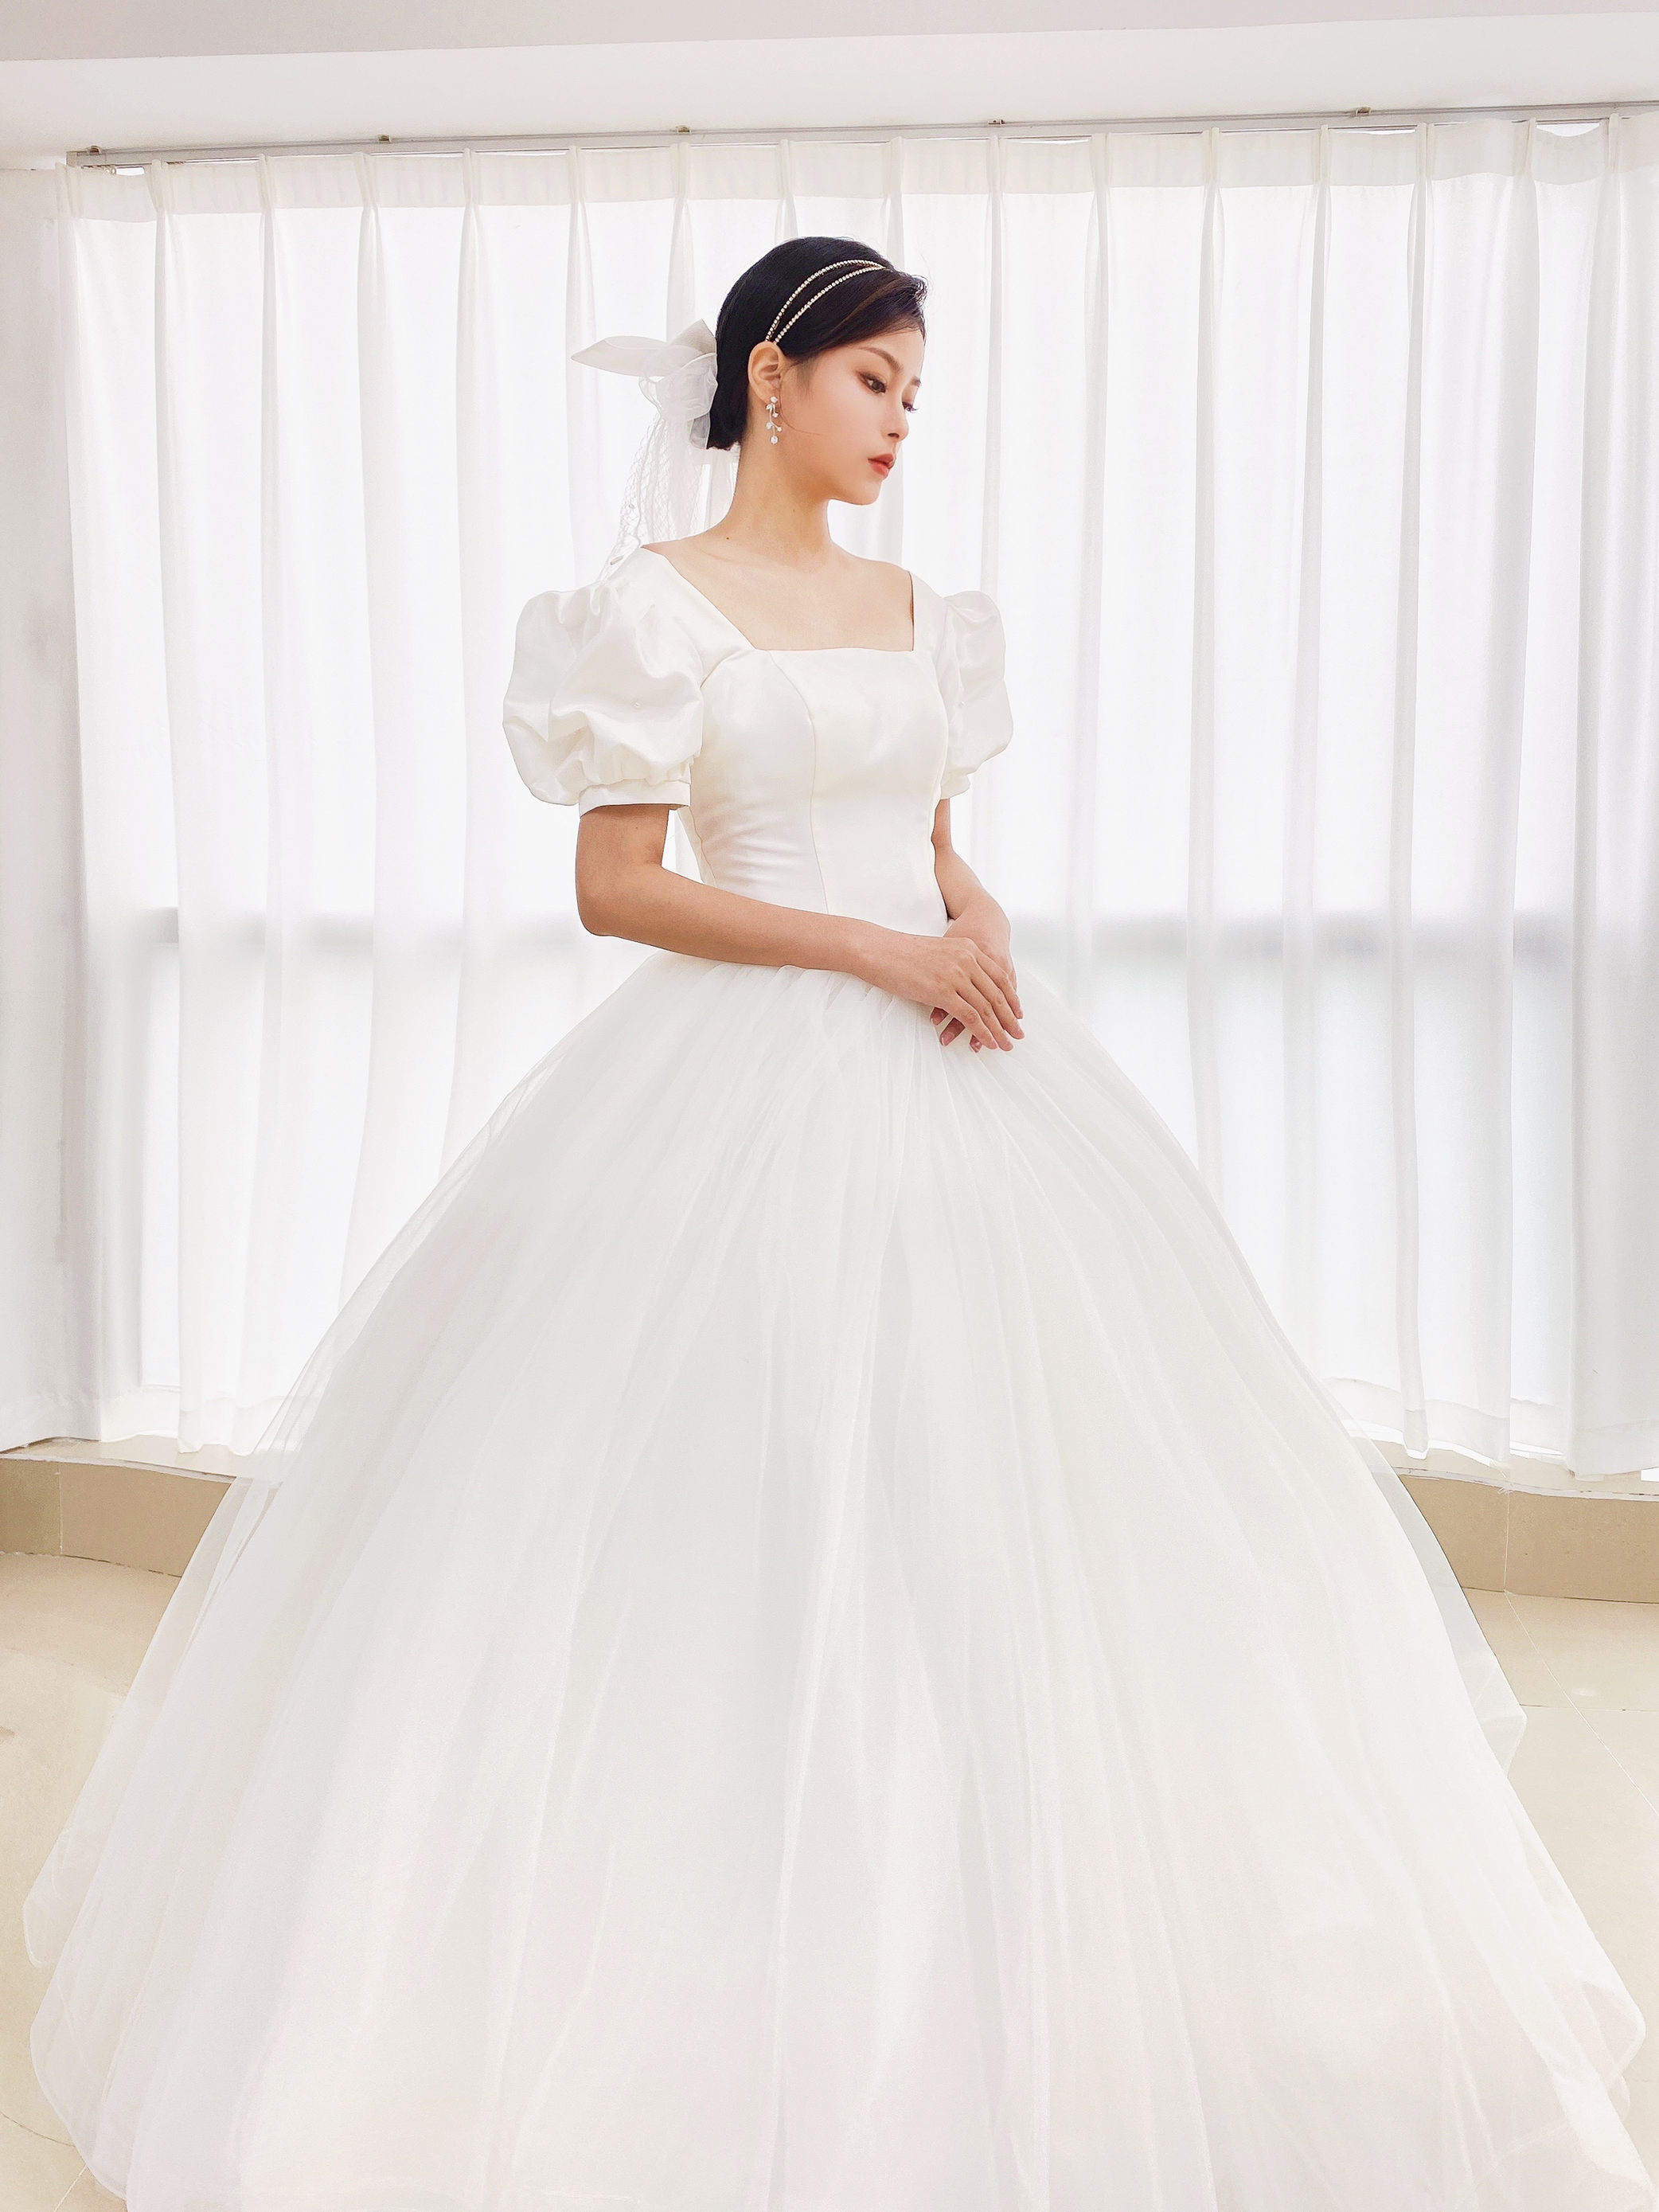 「壹妆造型」原创韩式新娘